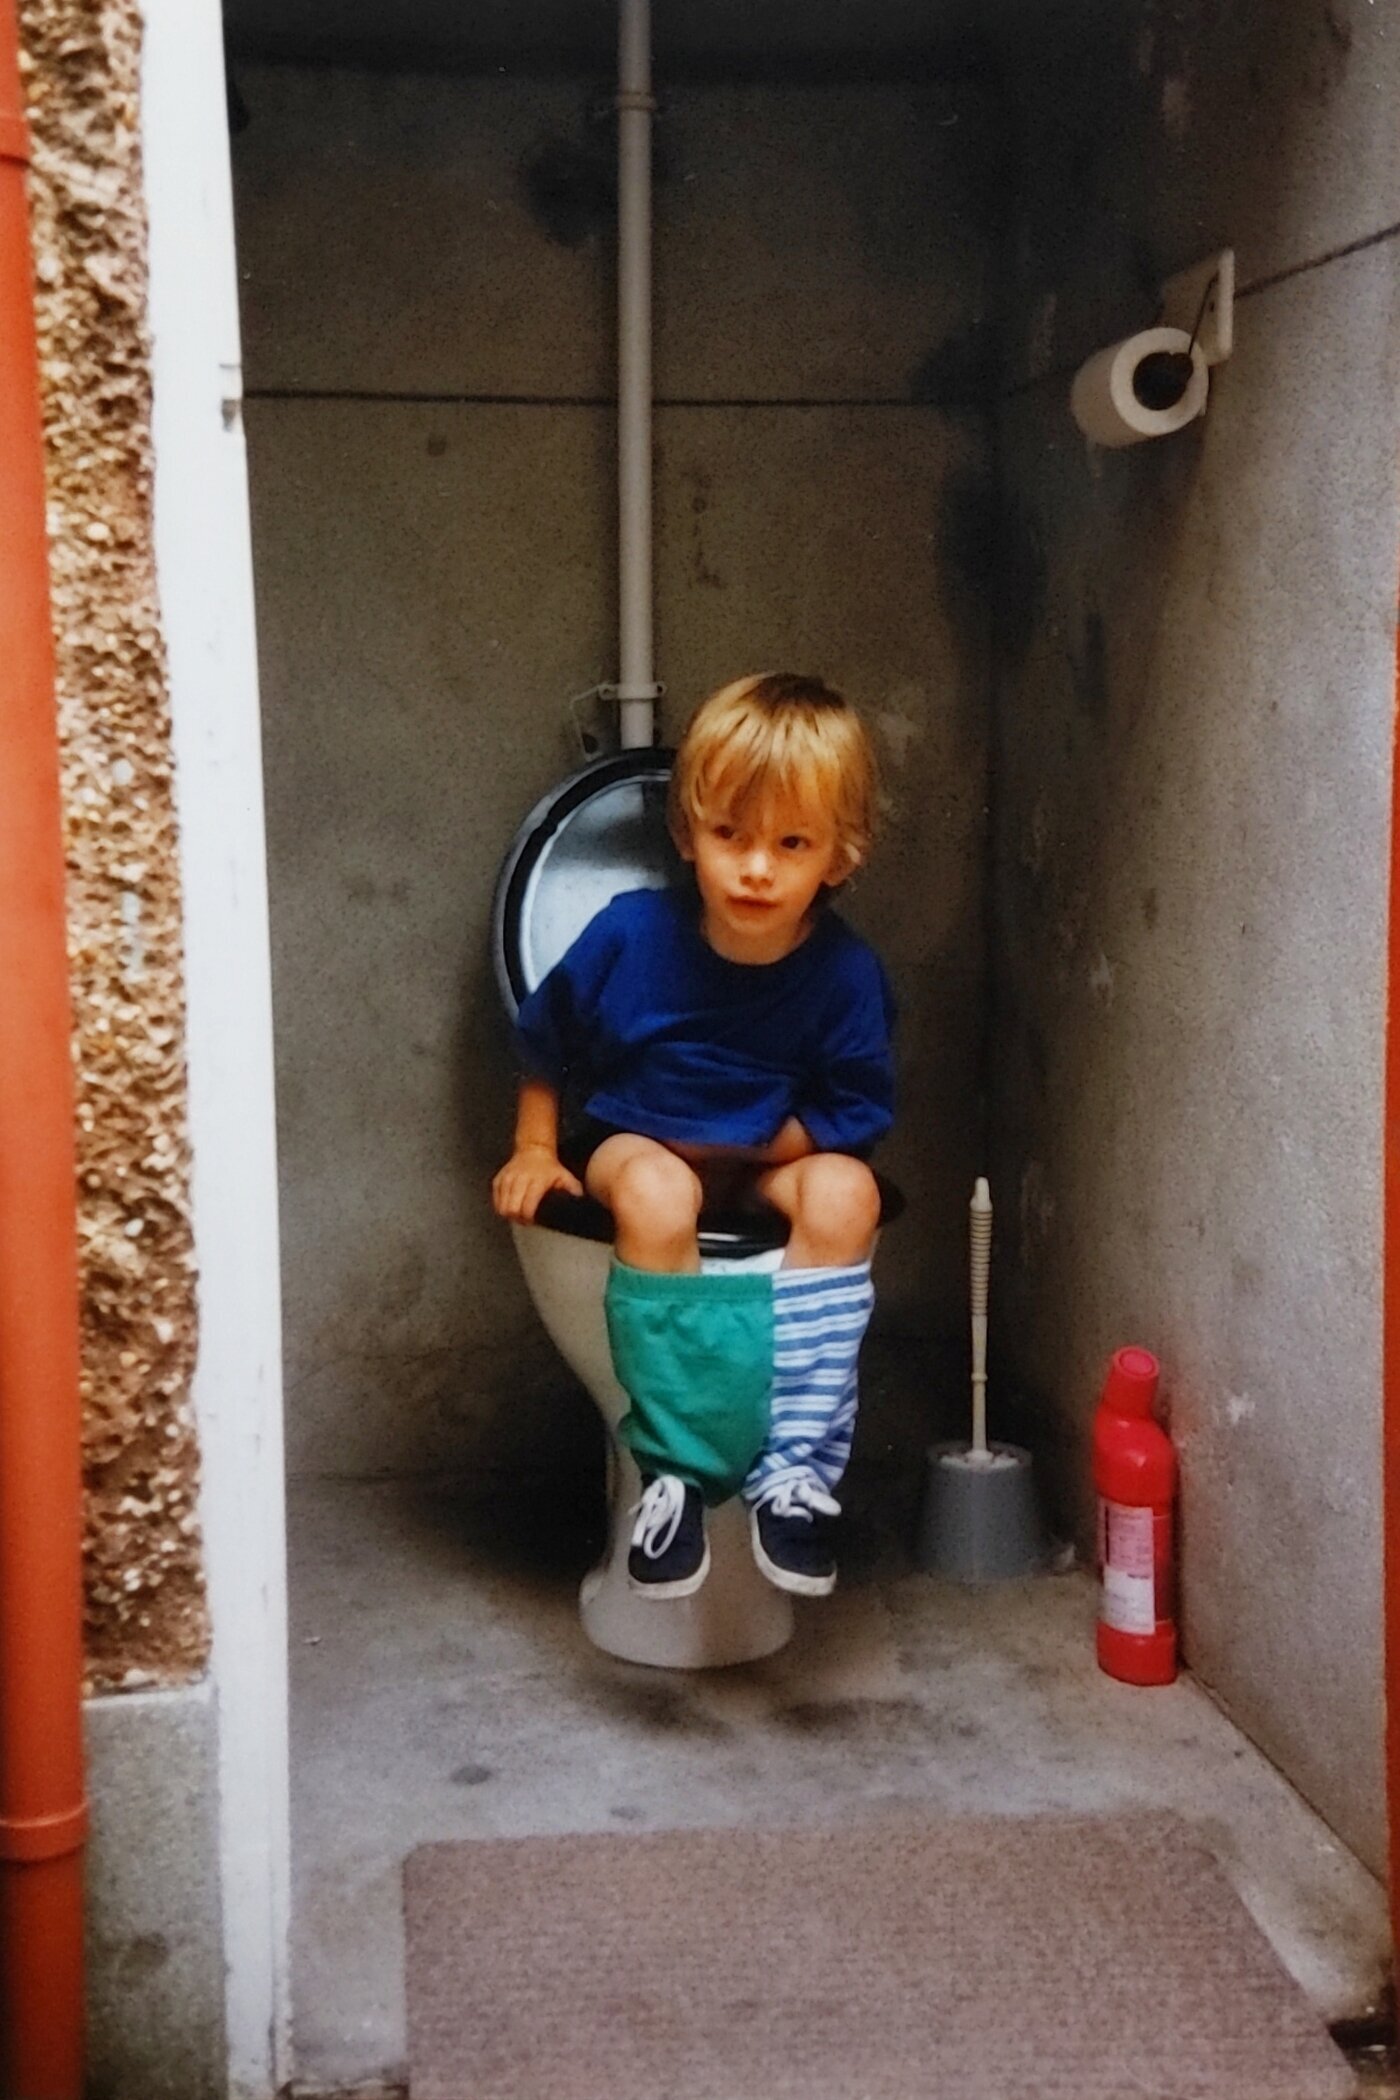 Giz Edwards sat on a toilet as a child